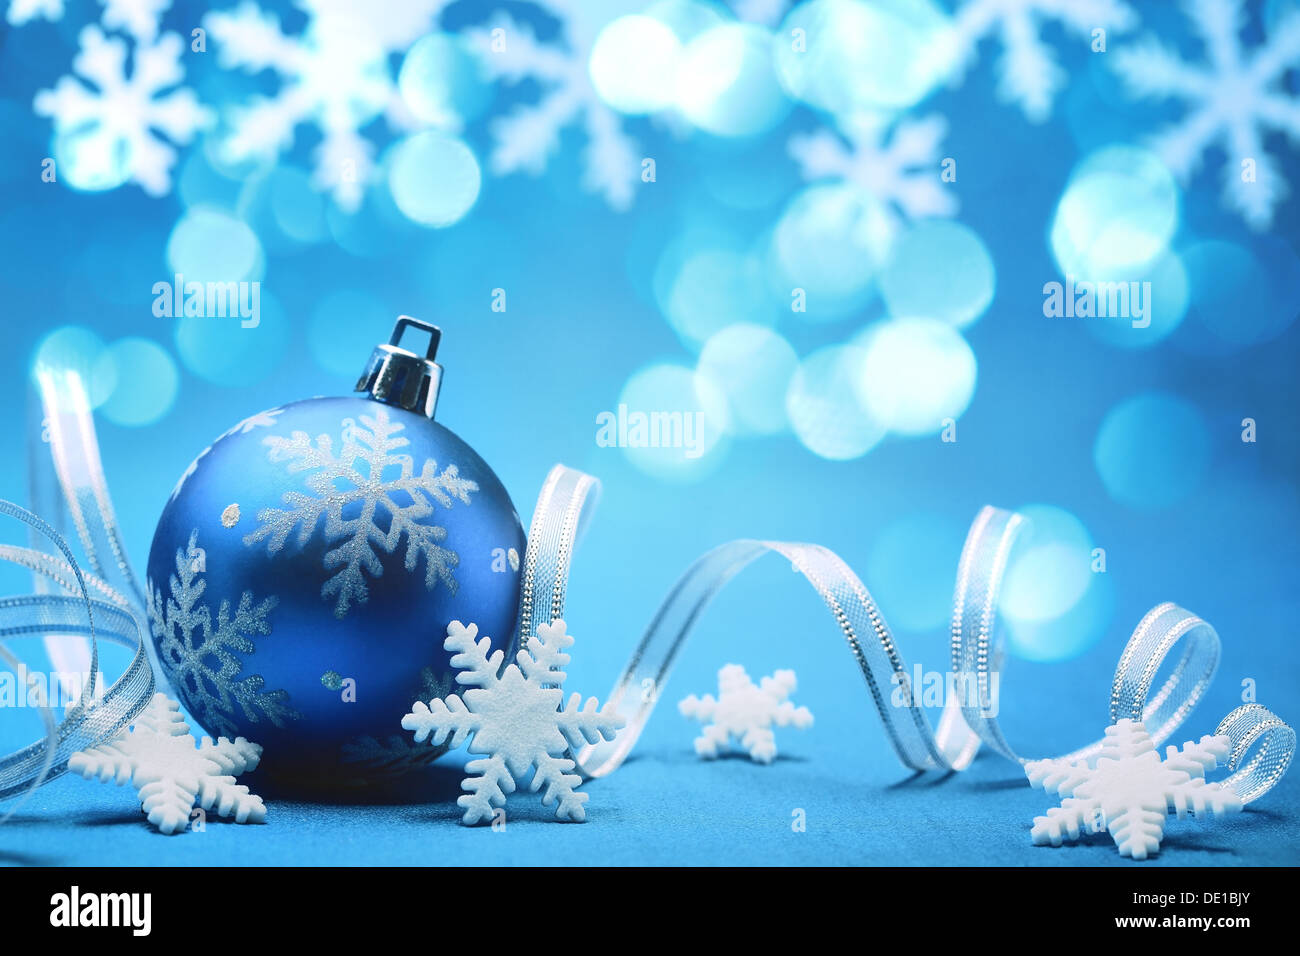 Christmas ball and snowflakes. Stock Photo